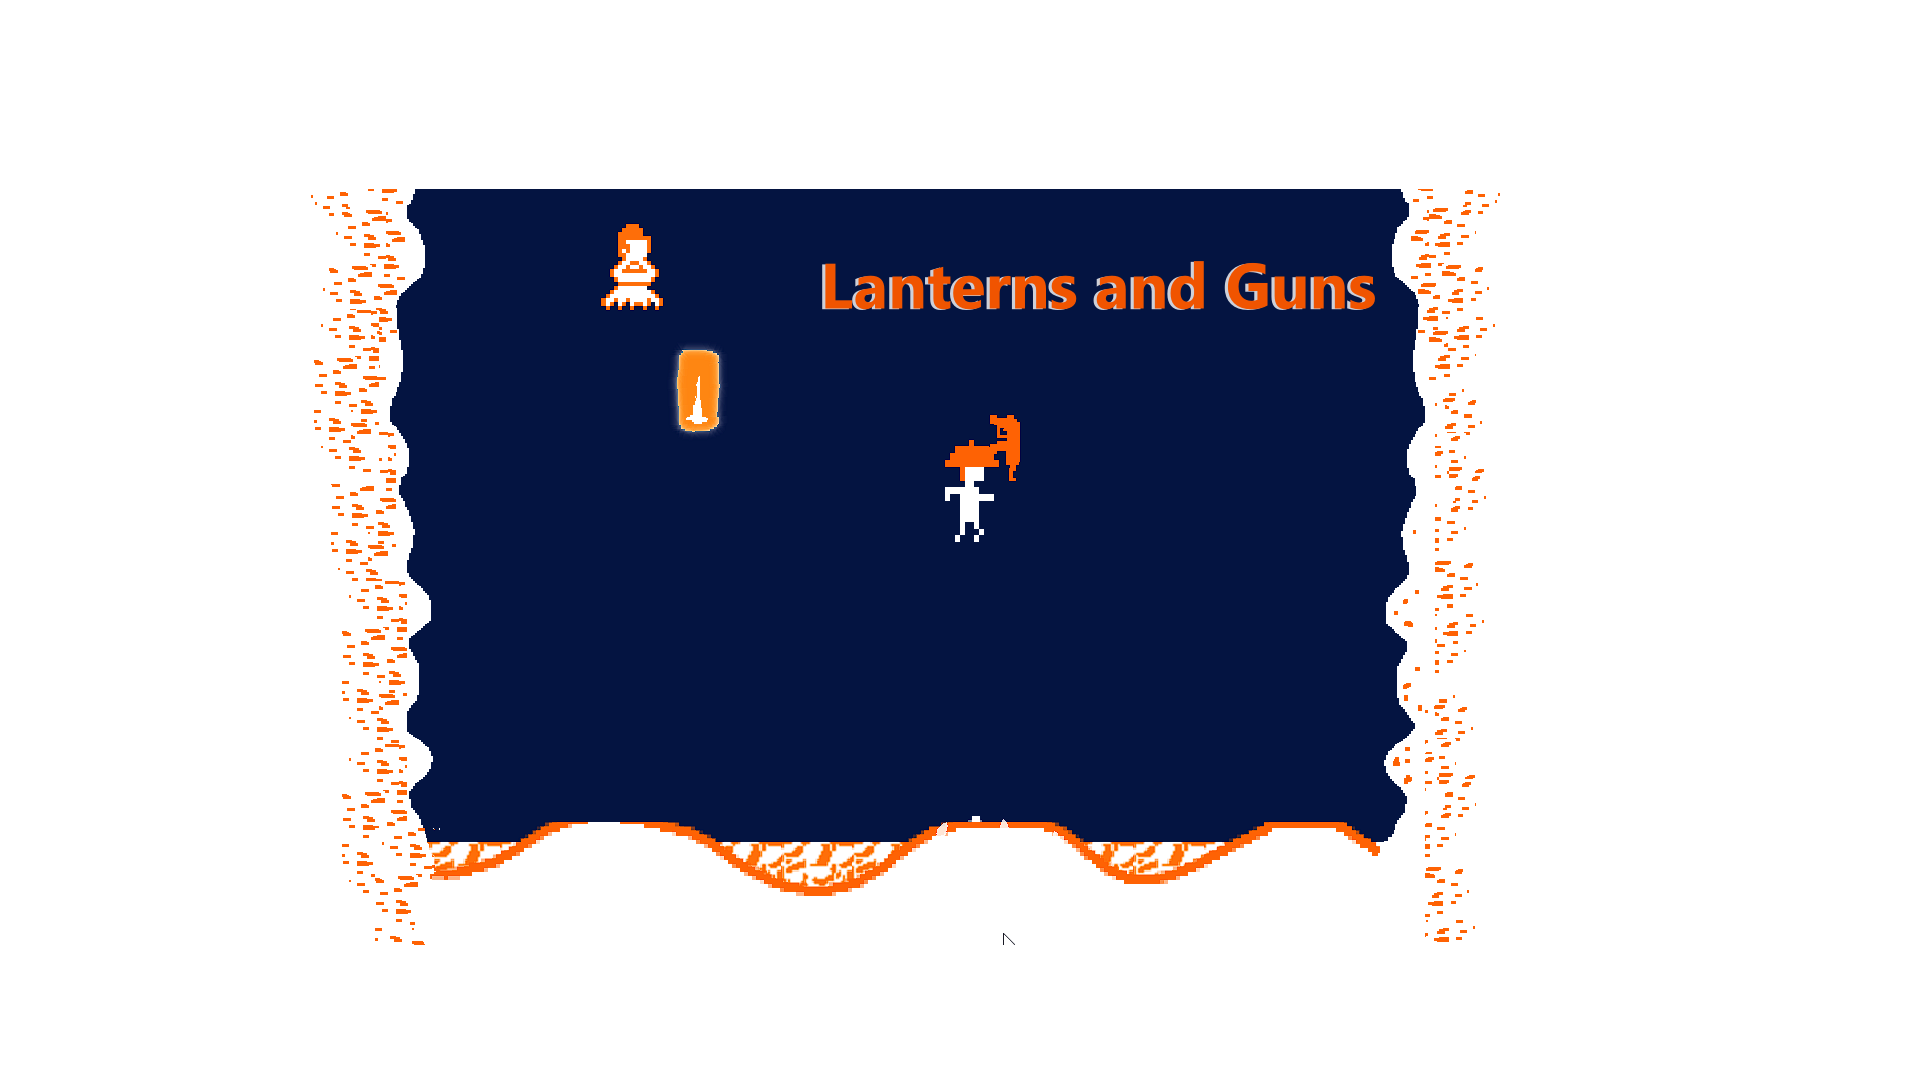 Lanterns and Guns